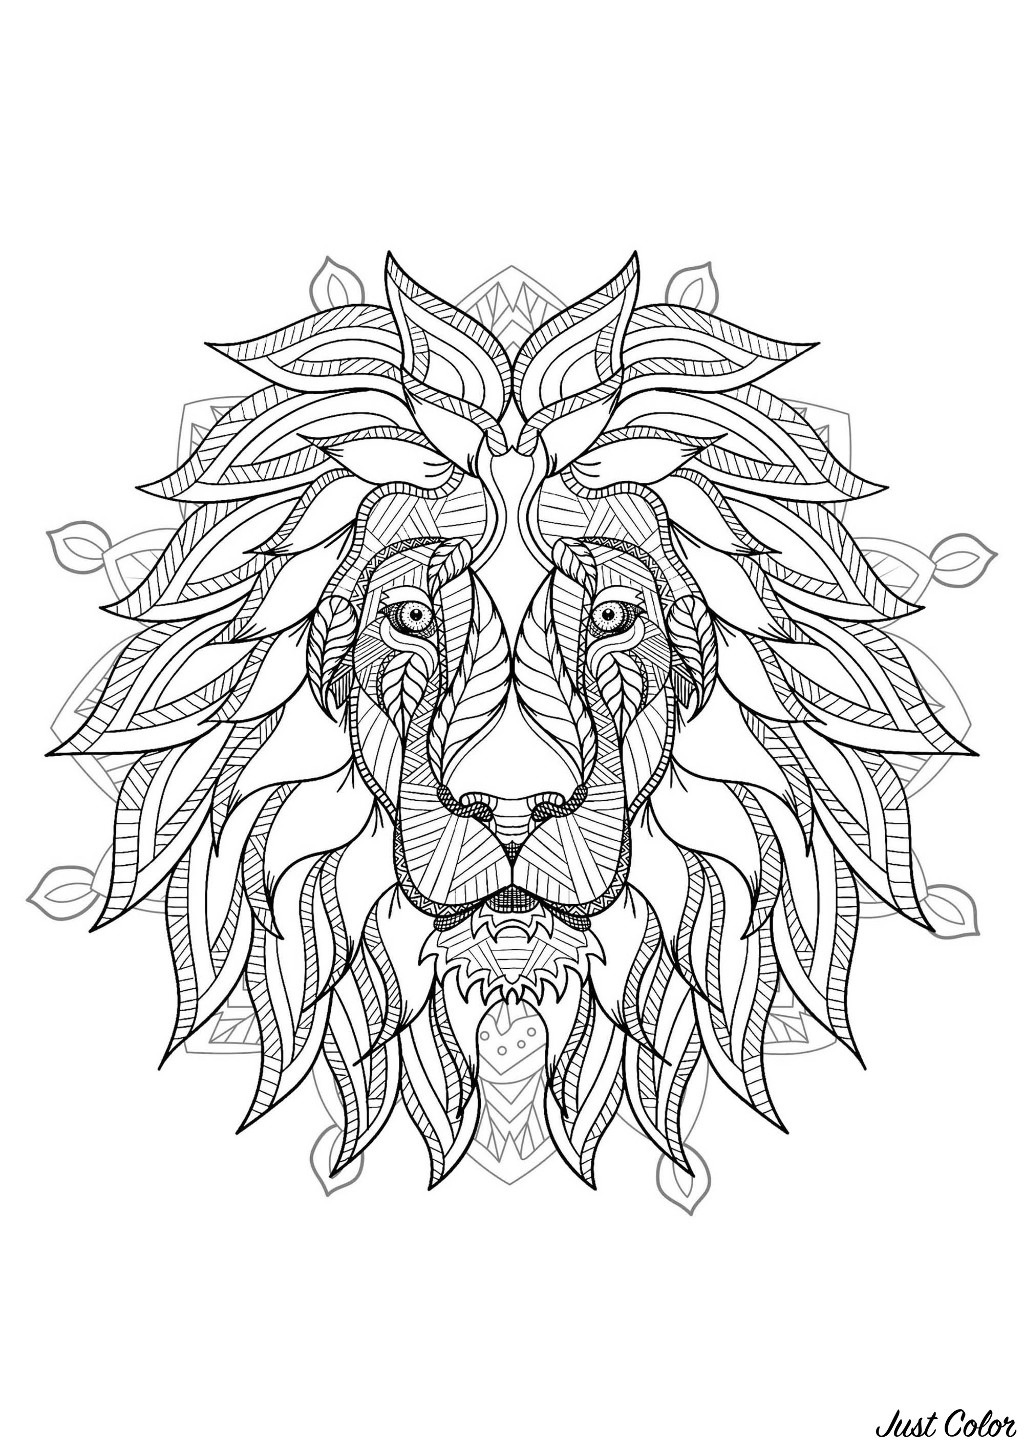 Mandala para colorear con cabeza de León muy elegante y bellos motivos vegetales de fondo